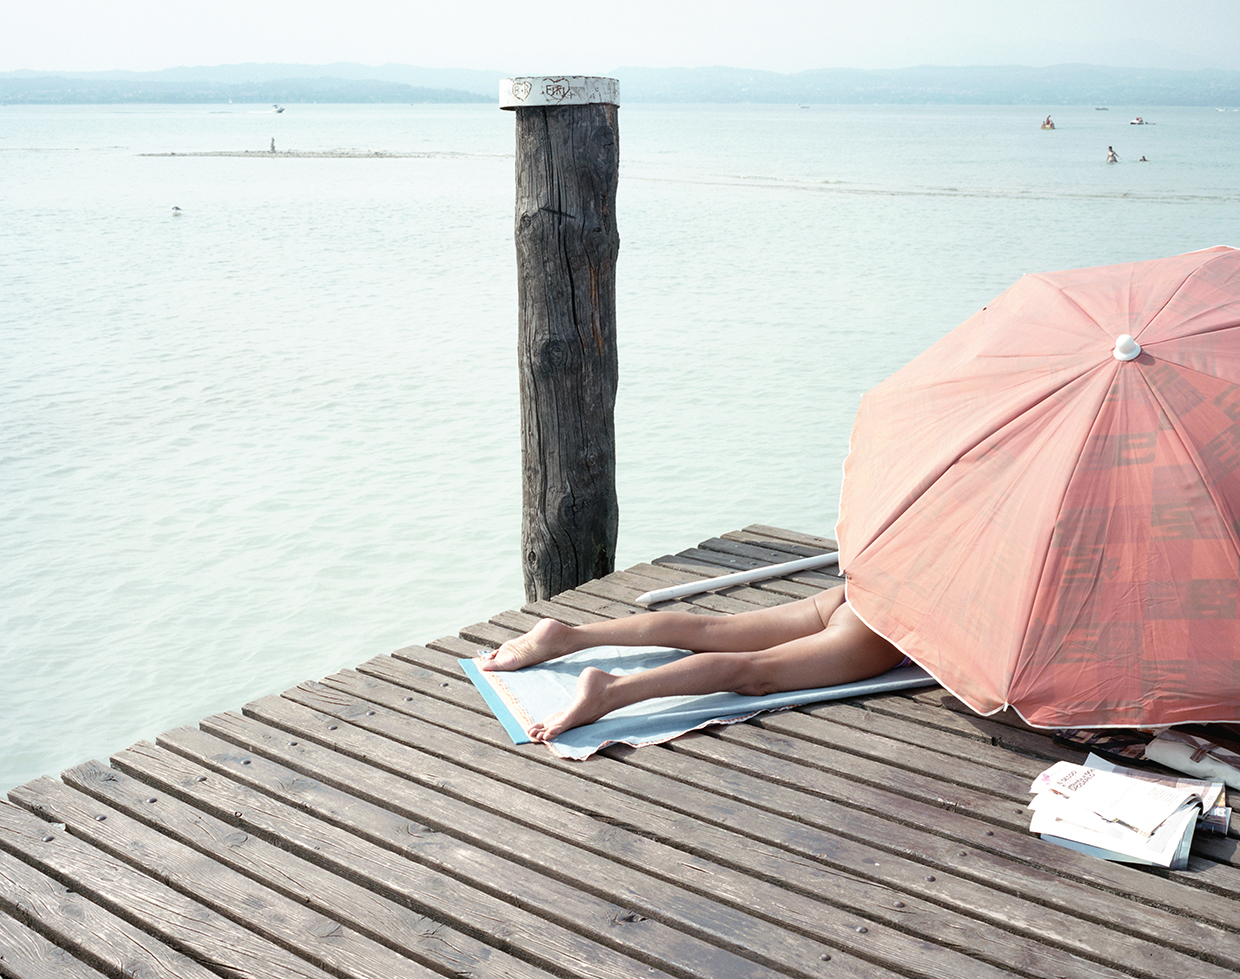  Sirmione, 2017, Italy
A woman getting sun bath on the pier of Lake Garda in Sirmione  